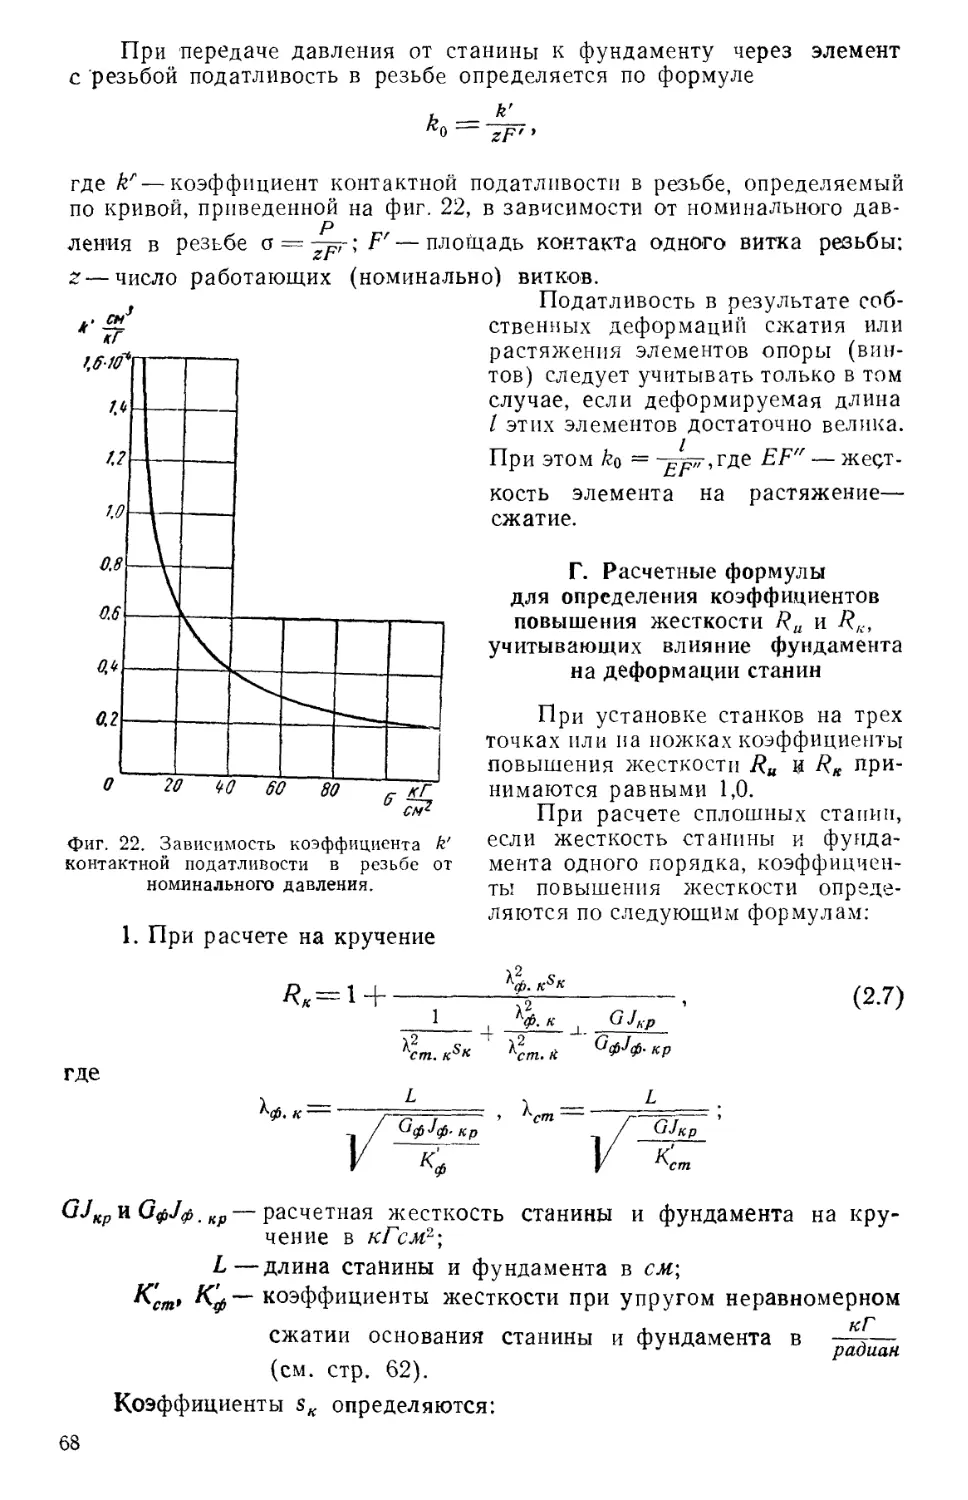 Г. Расчетные формулы для определения коэффициентов повышения жесткости Ru и Rk, учитывающих влияние фундамента на деформации станины